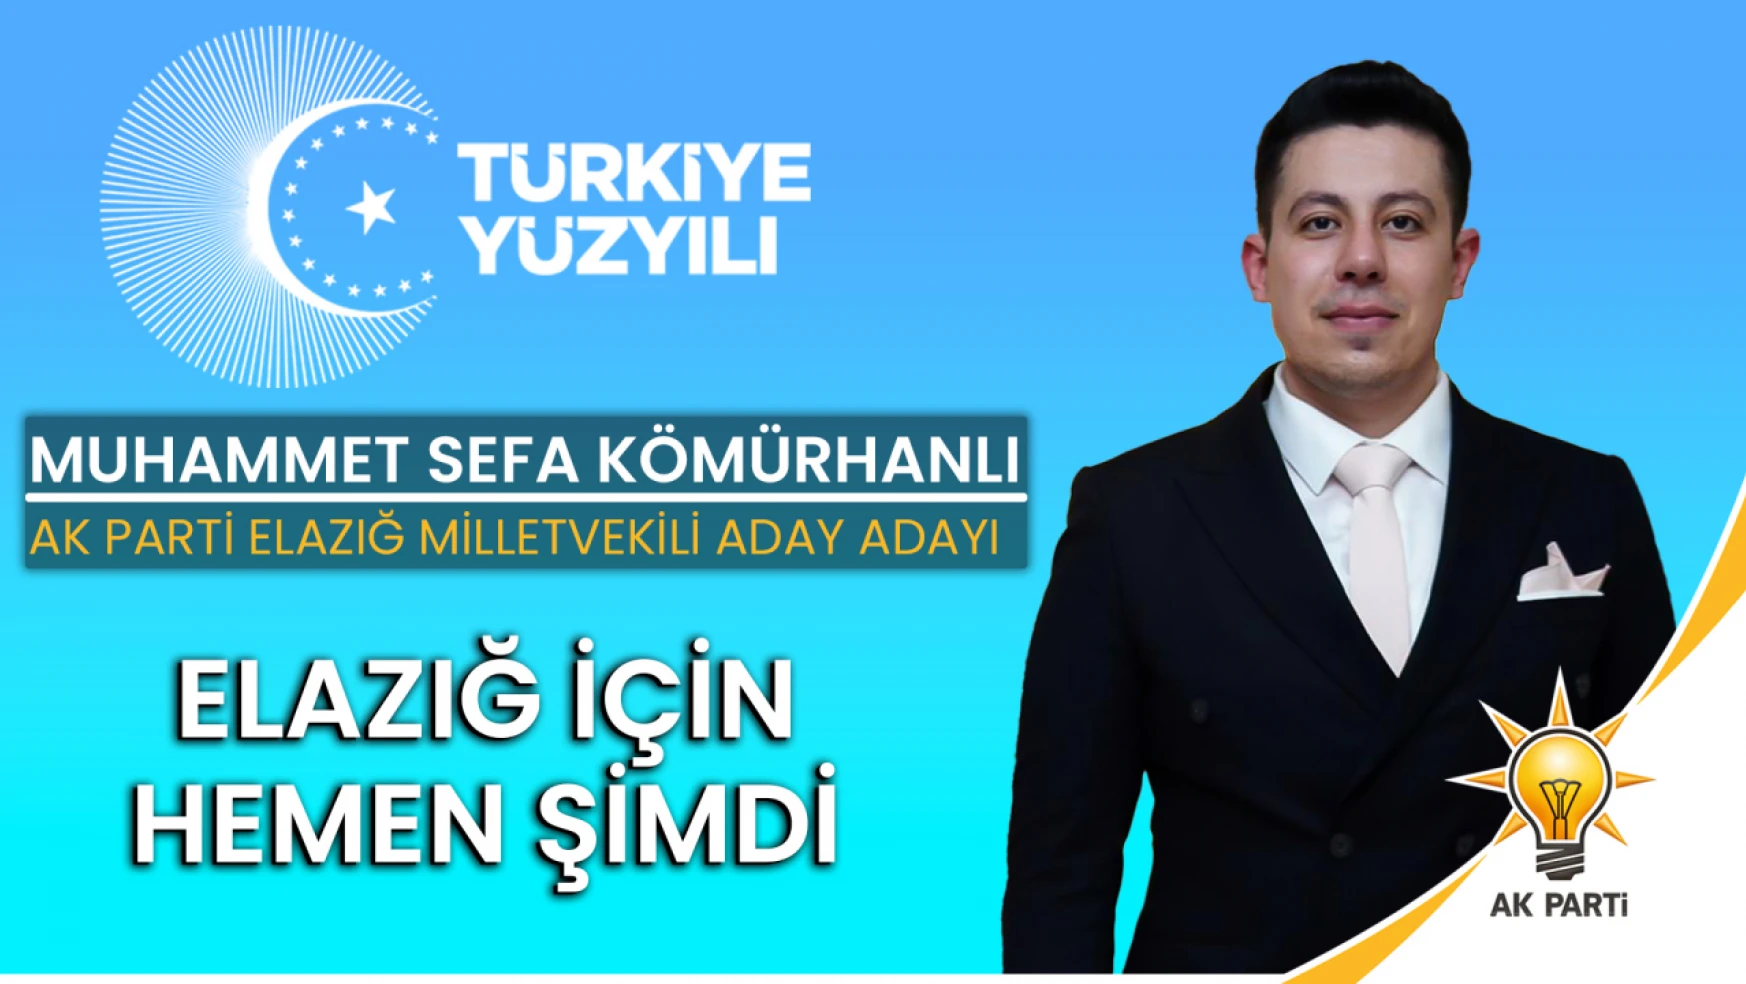 Muhammet Sefa Kömürhanlı, AK parti Elazığ Milletvekili aday adaylığını açıkladı